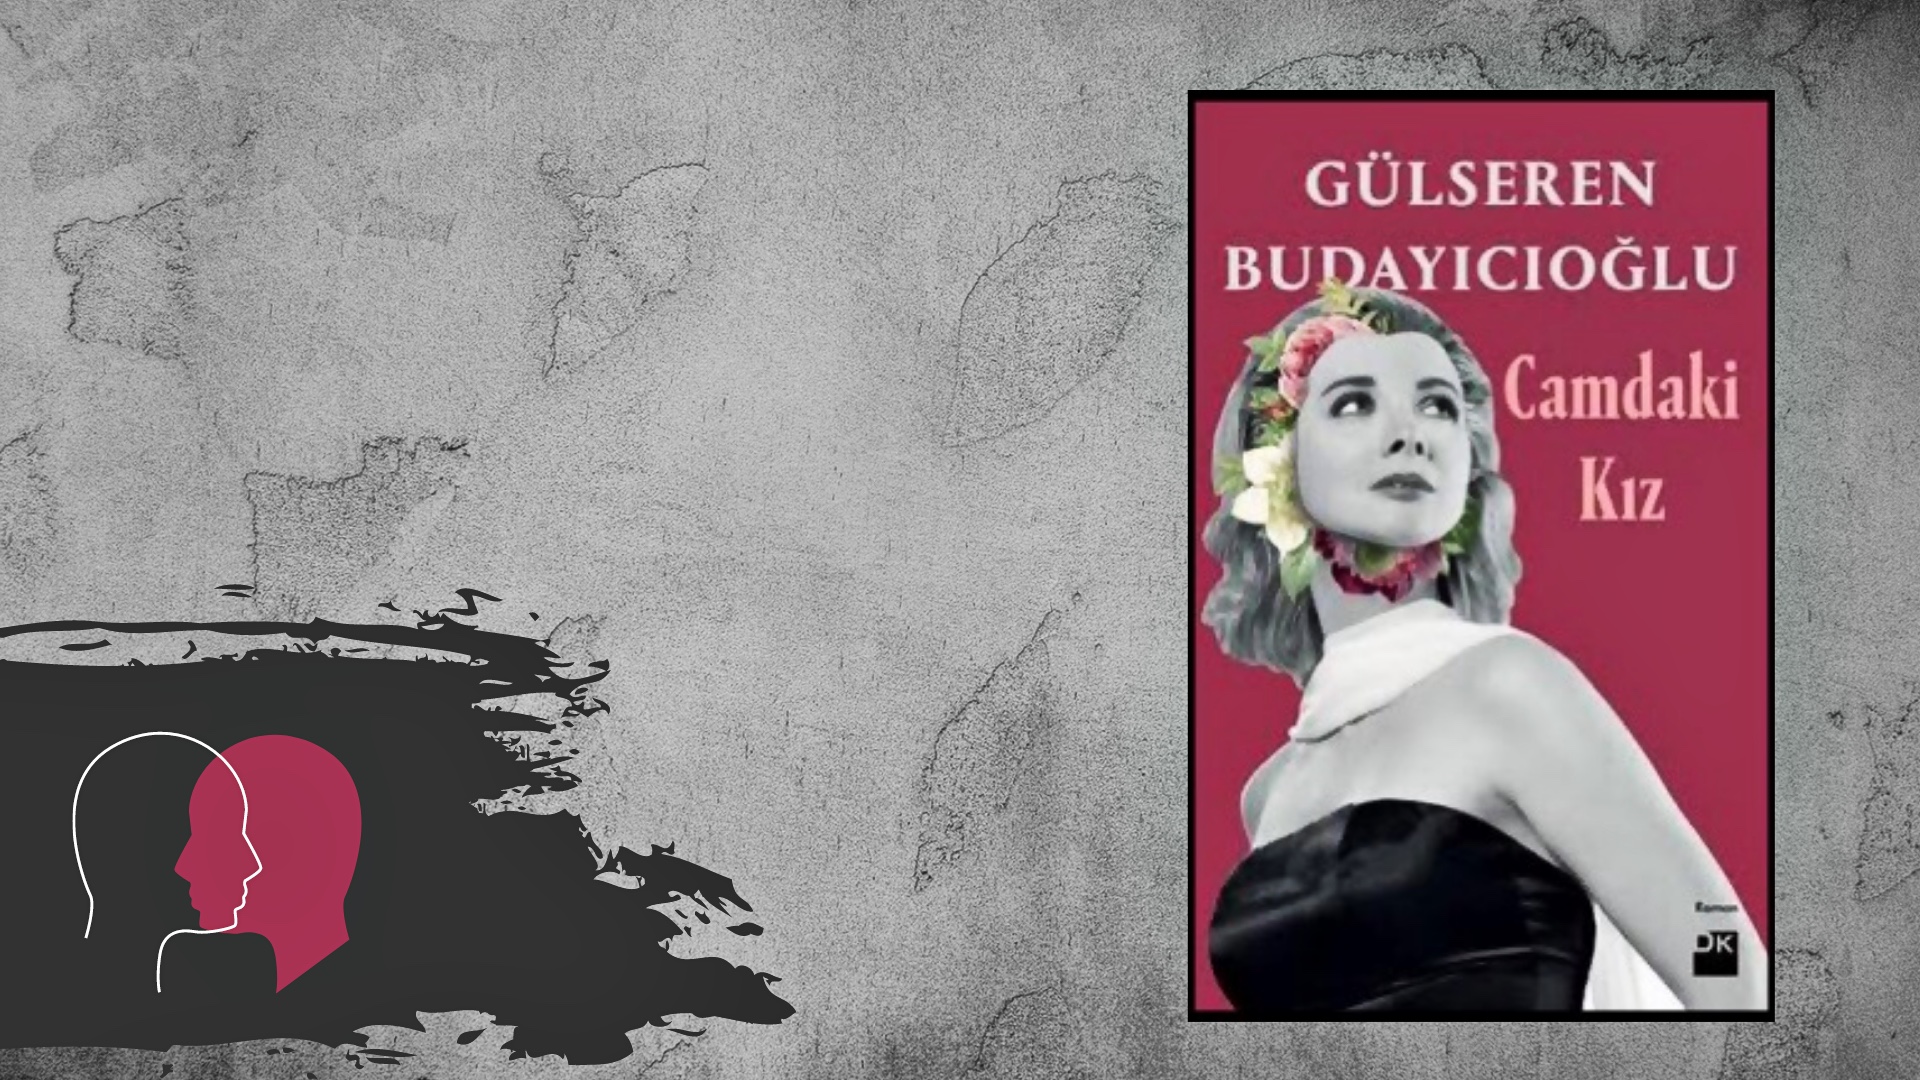 Kitap: Camdaki Kız | Yazar: Gülseren Budayıcıoğlu | Yorumlayan: Kübra Mısırlı Keskin